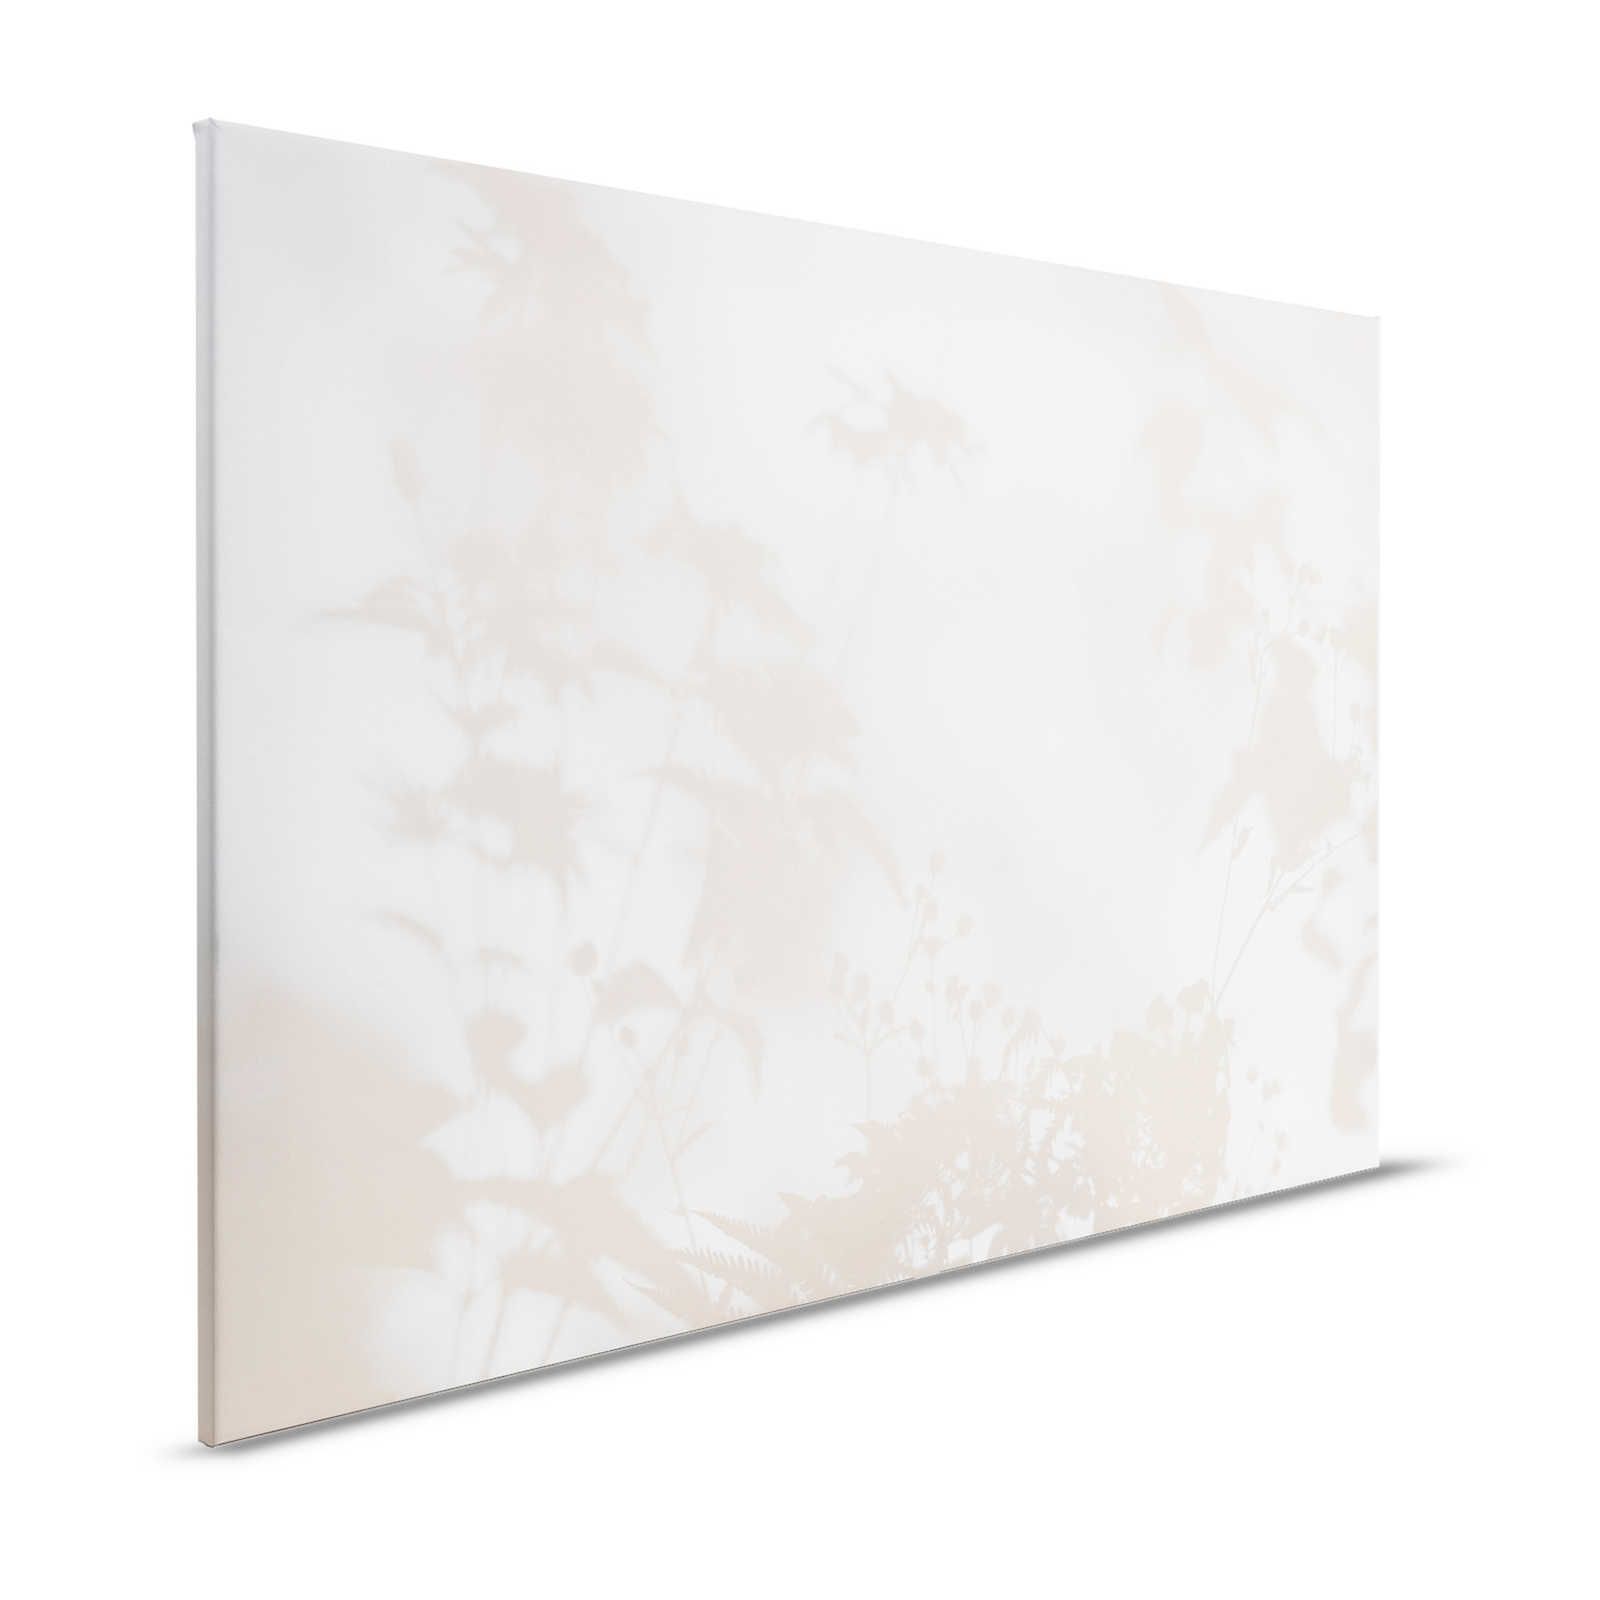 Camera d'ombra 1 - Tela naturale Beige e bianco, disegno sfumato - 1,20 m x 0,80 m
